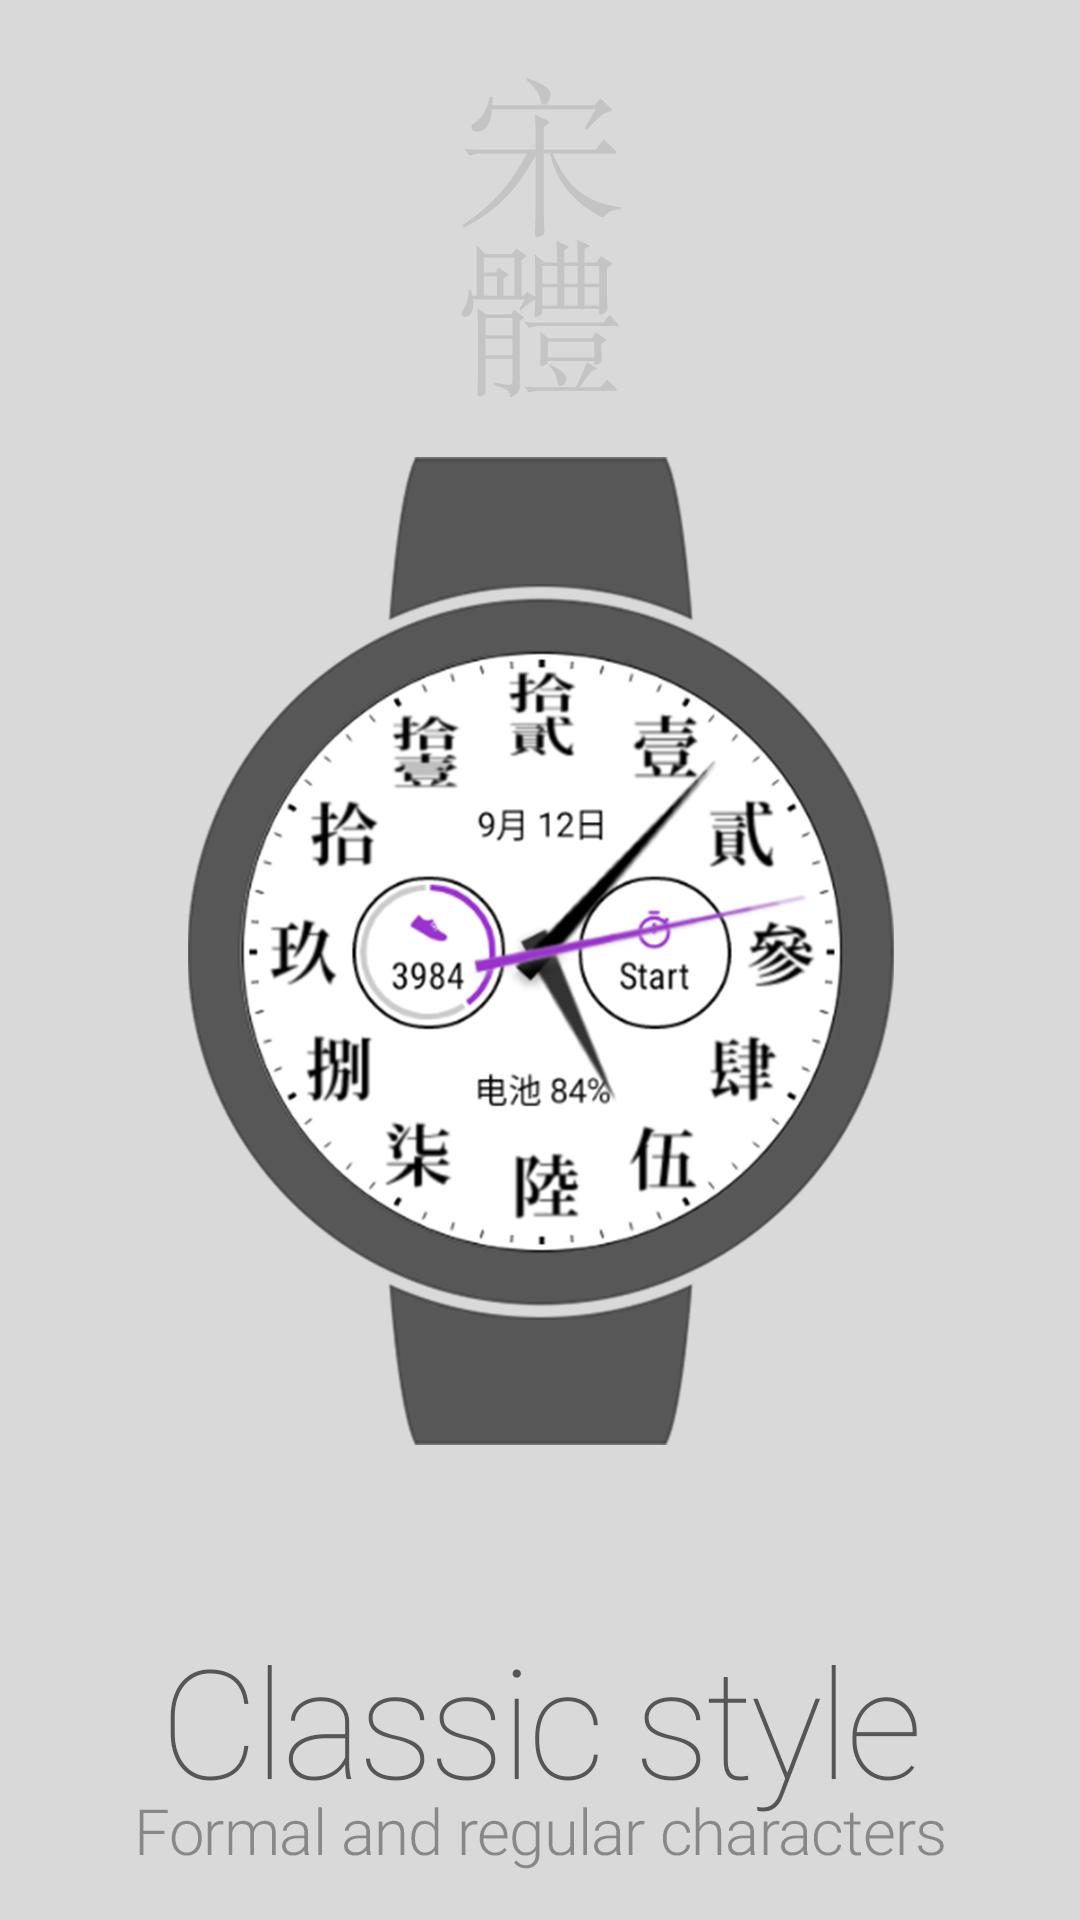 Название часов в китае